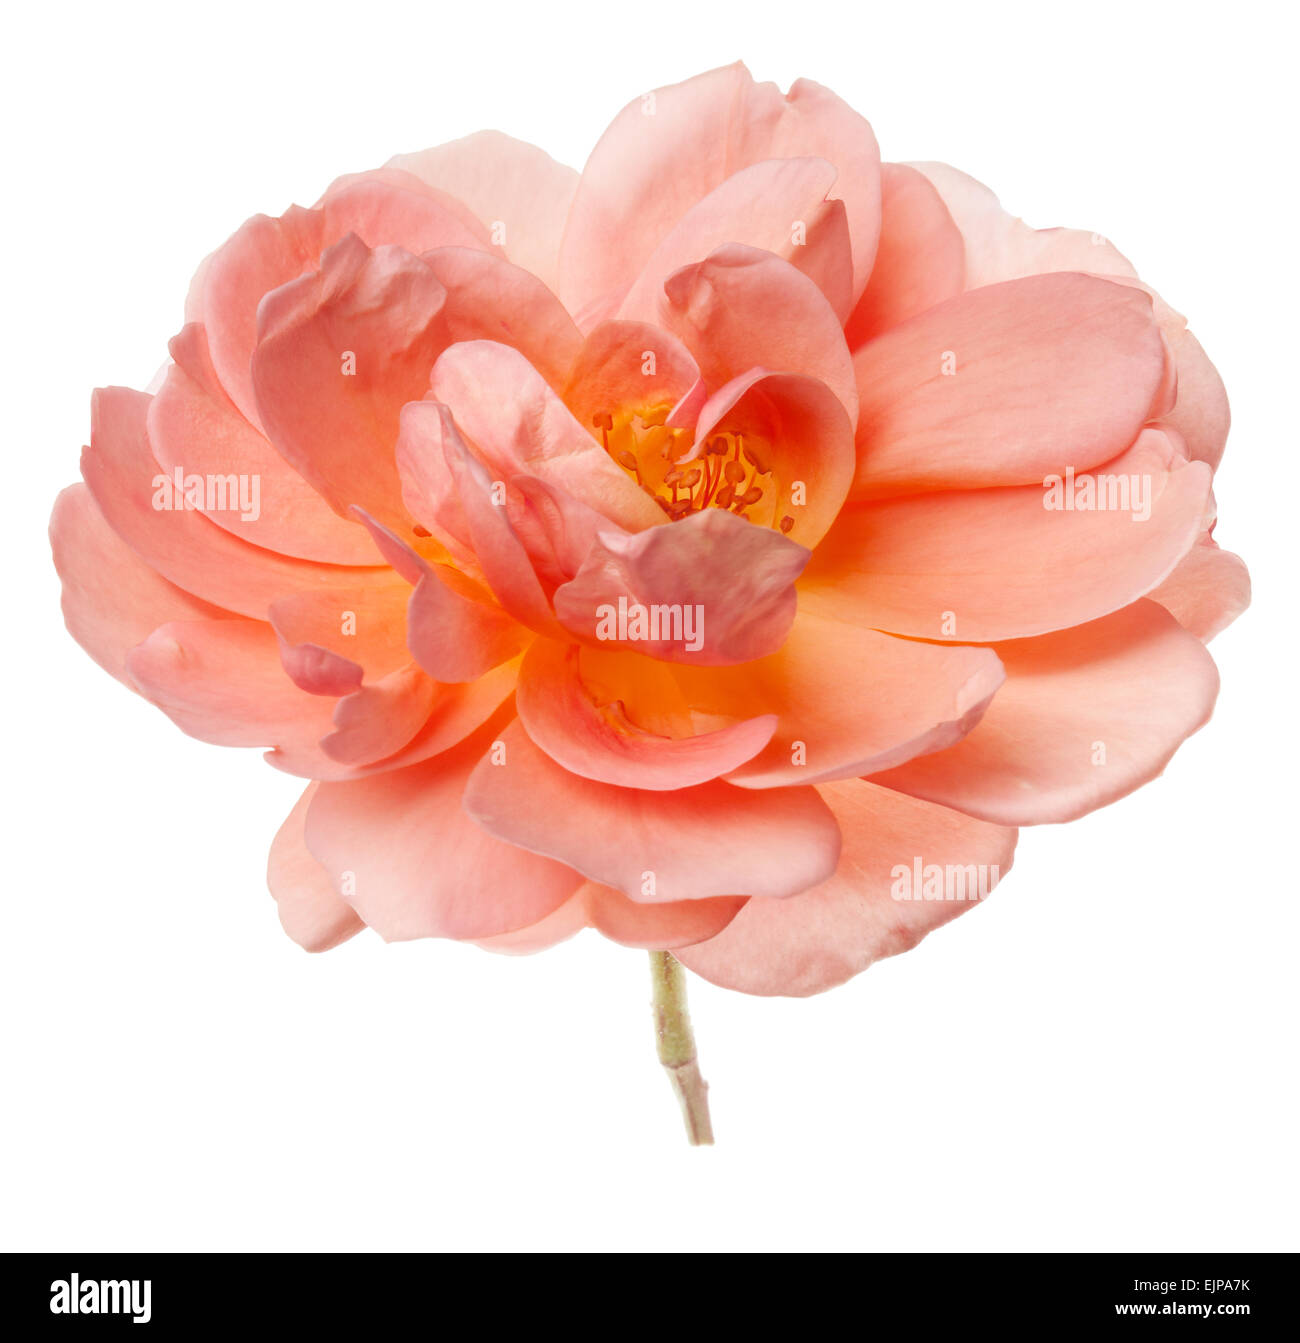 Pfirsich pink Garten rose Blume in Vase auf einer rein weißen Hintergrund isoliert Stockfoto